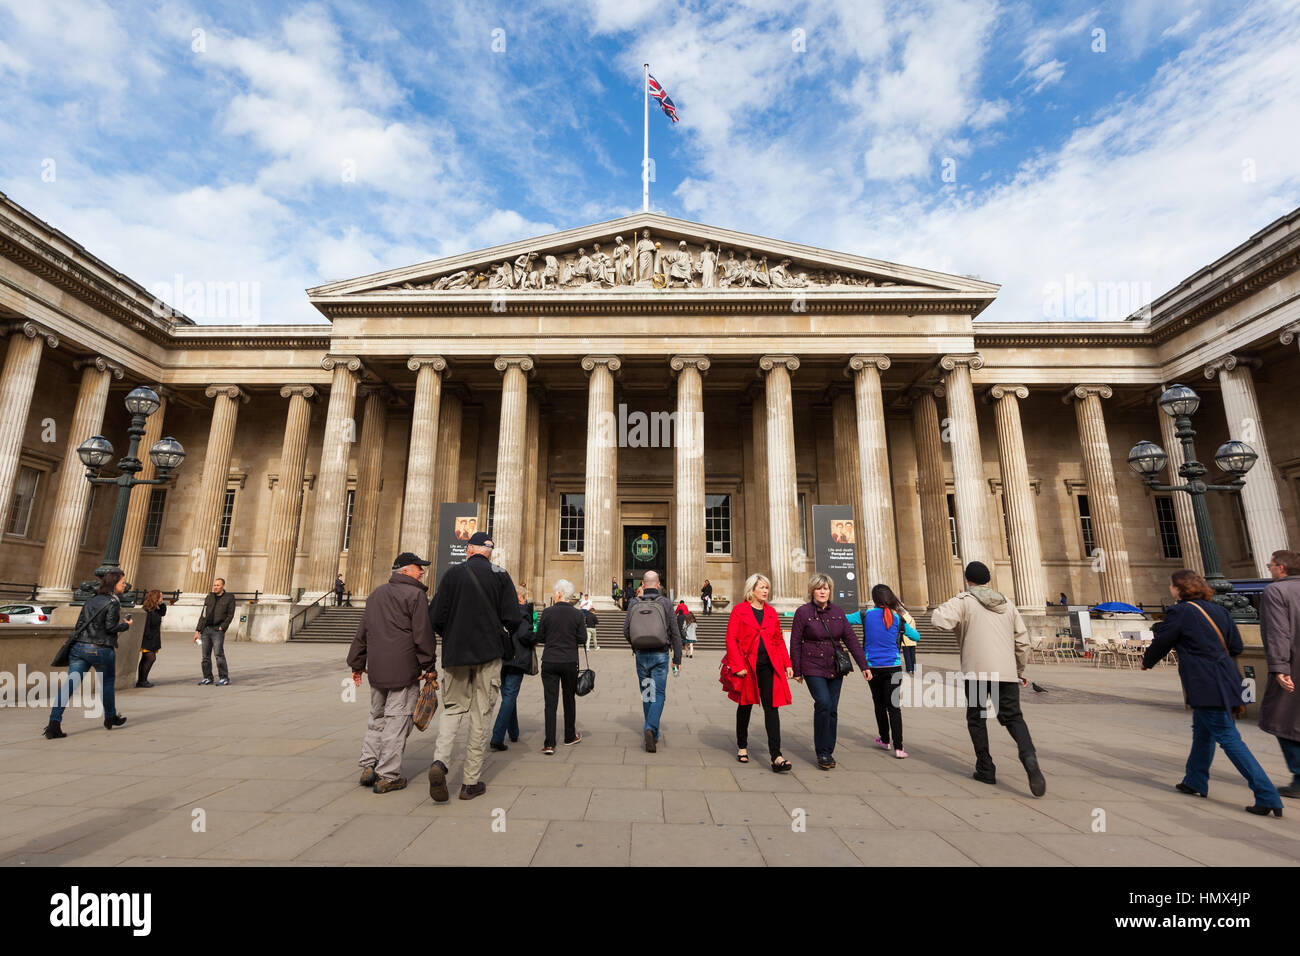 Londres - Septembre 19 : Les gens de l'extérieur de la British Museum de Londres le 19 septembre 2013. Prises au cours de la célèbre exposition Pompeii qui a duré 6 mois Banque D'Images